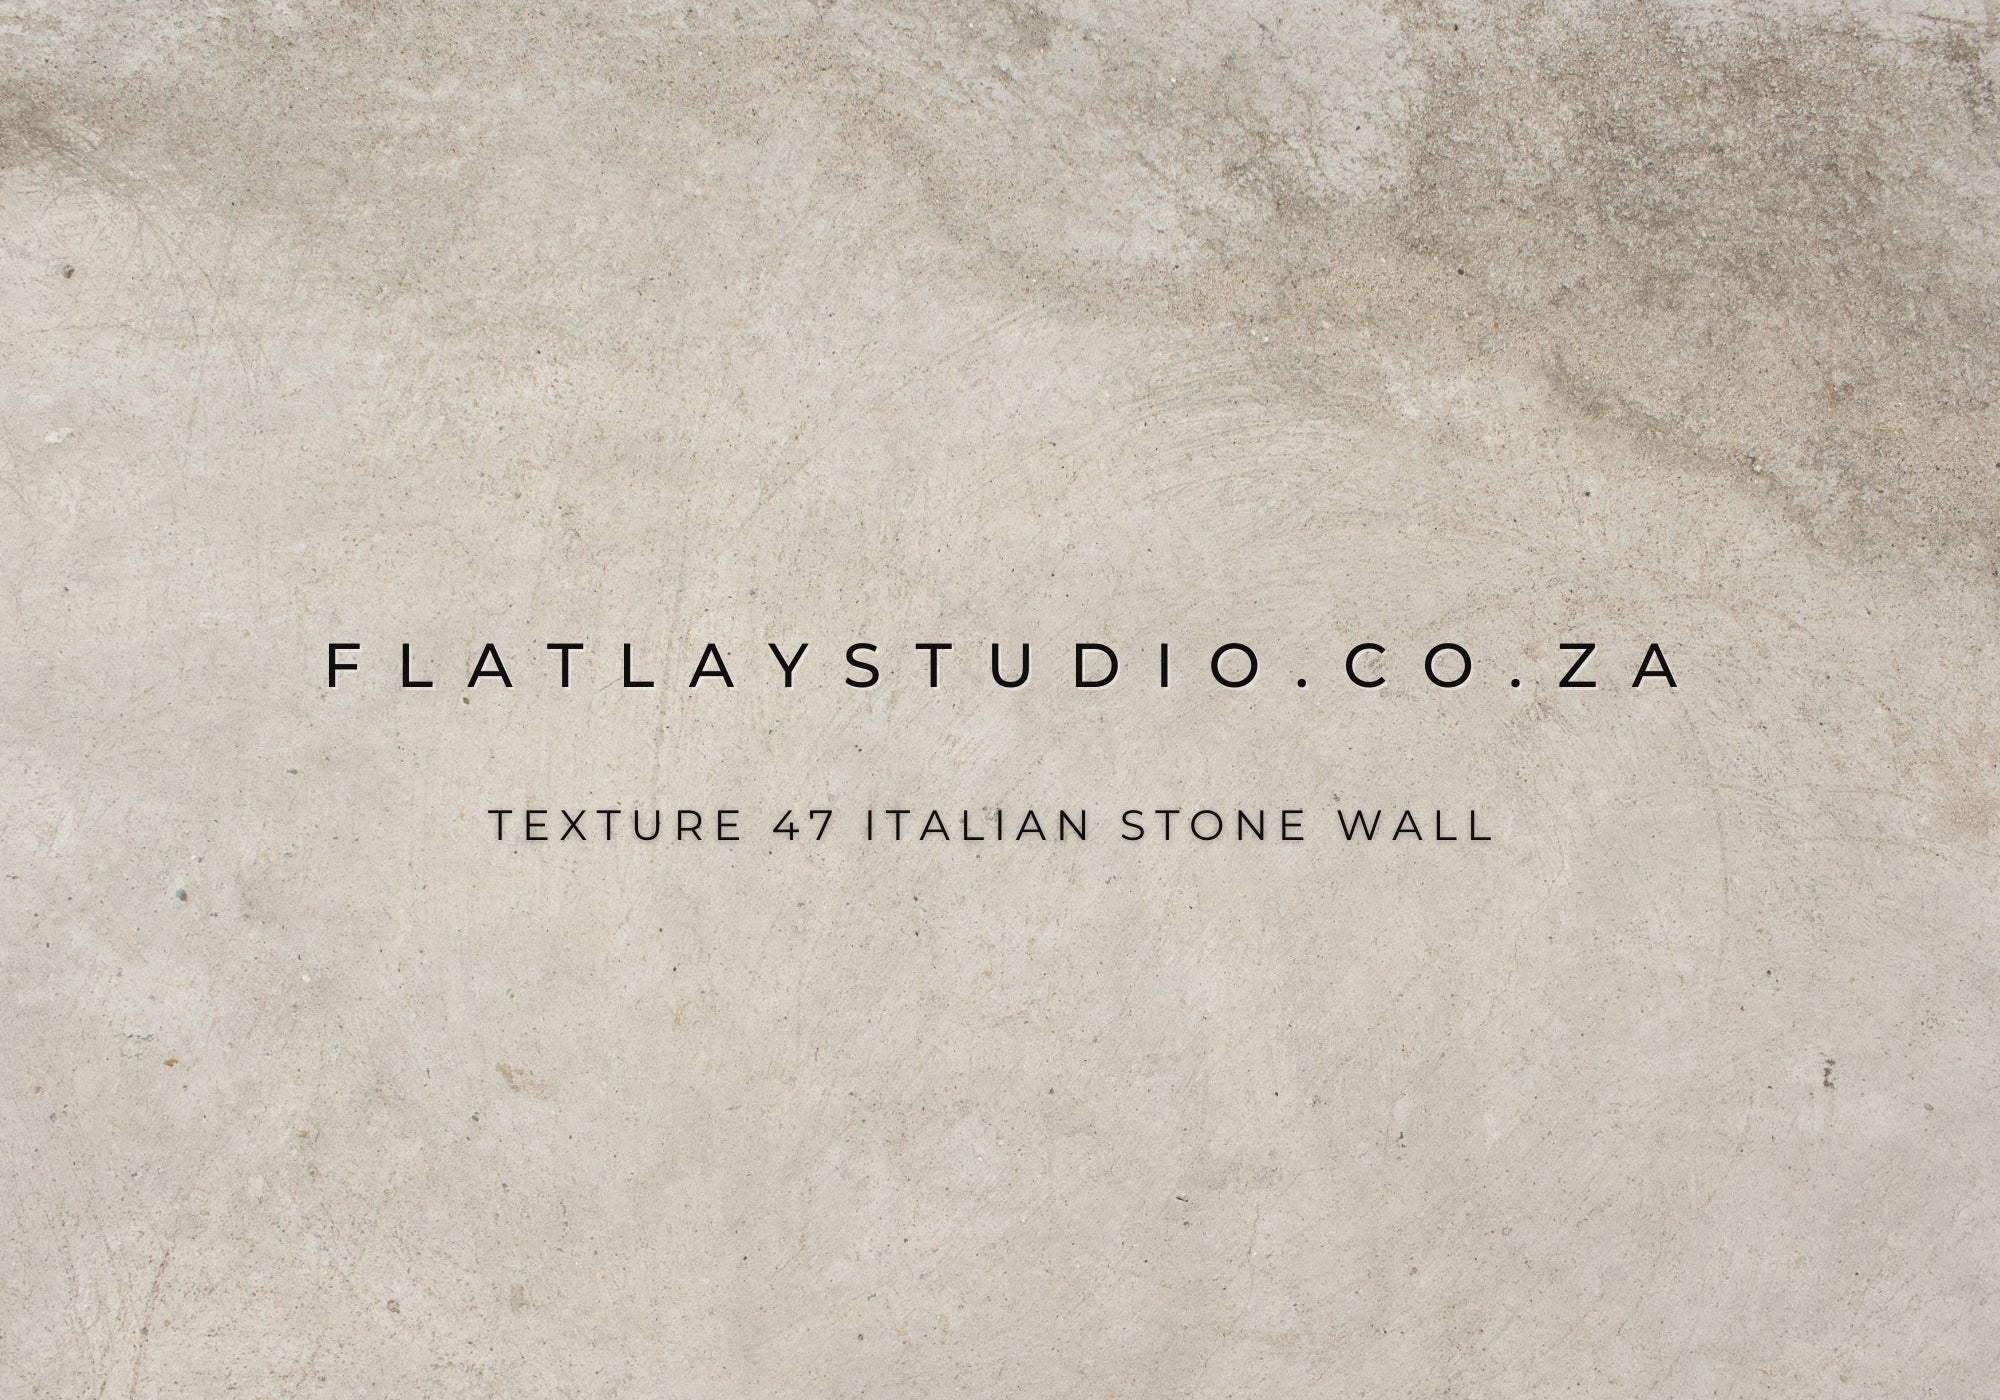 Texture 47 Italian Stone Wall - FlatlayStudio Flatlay Styling Board